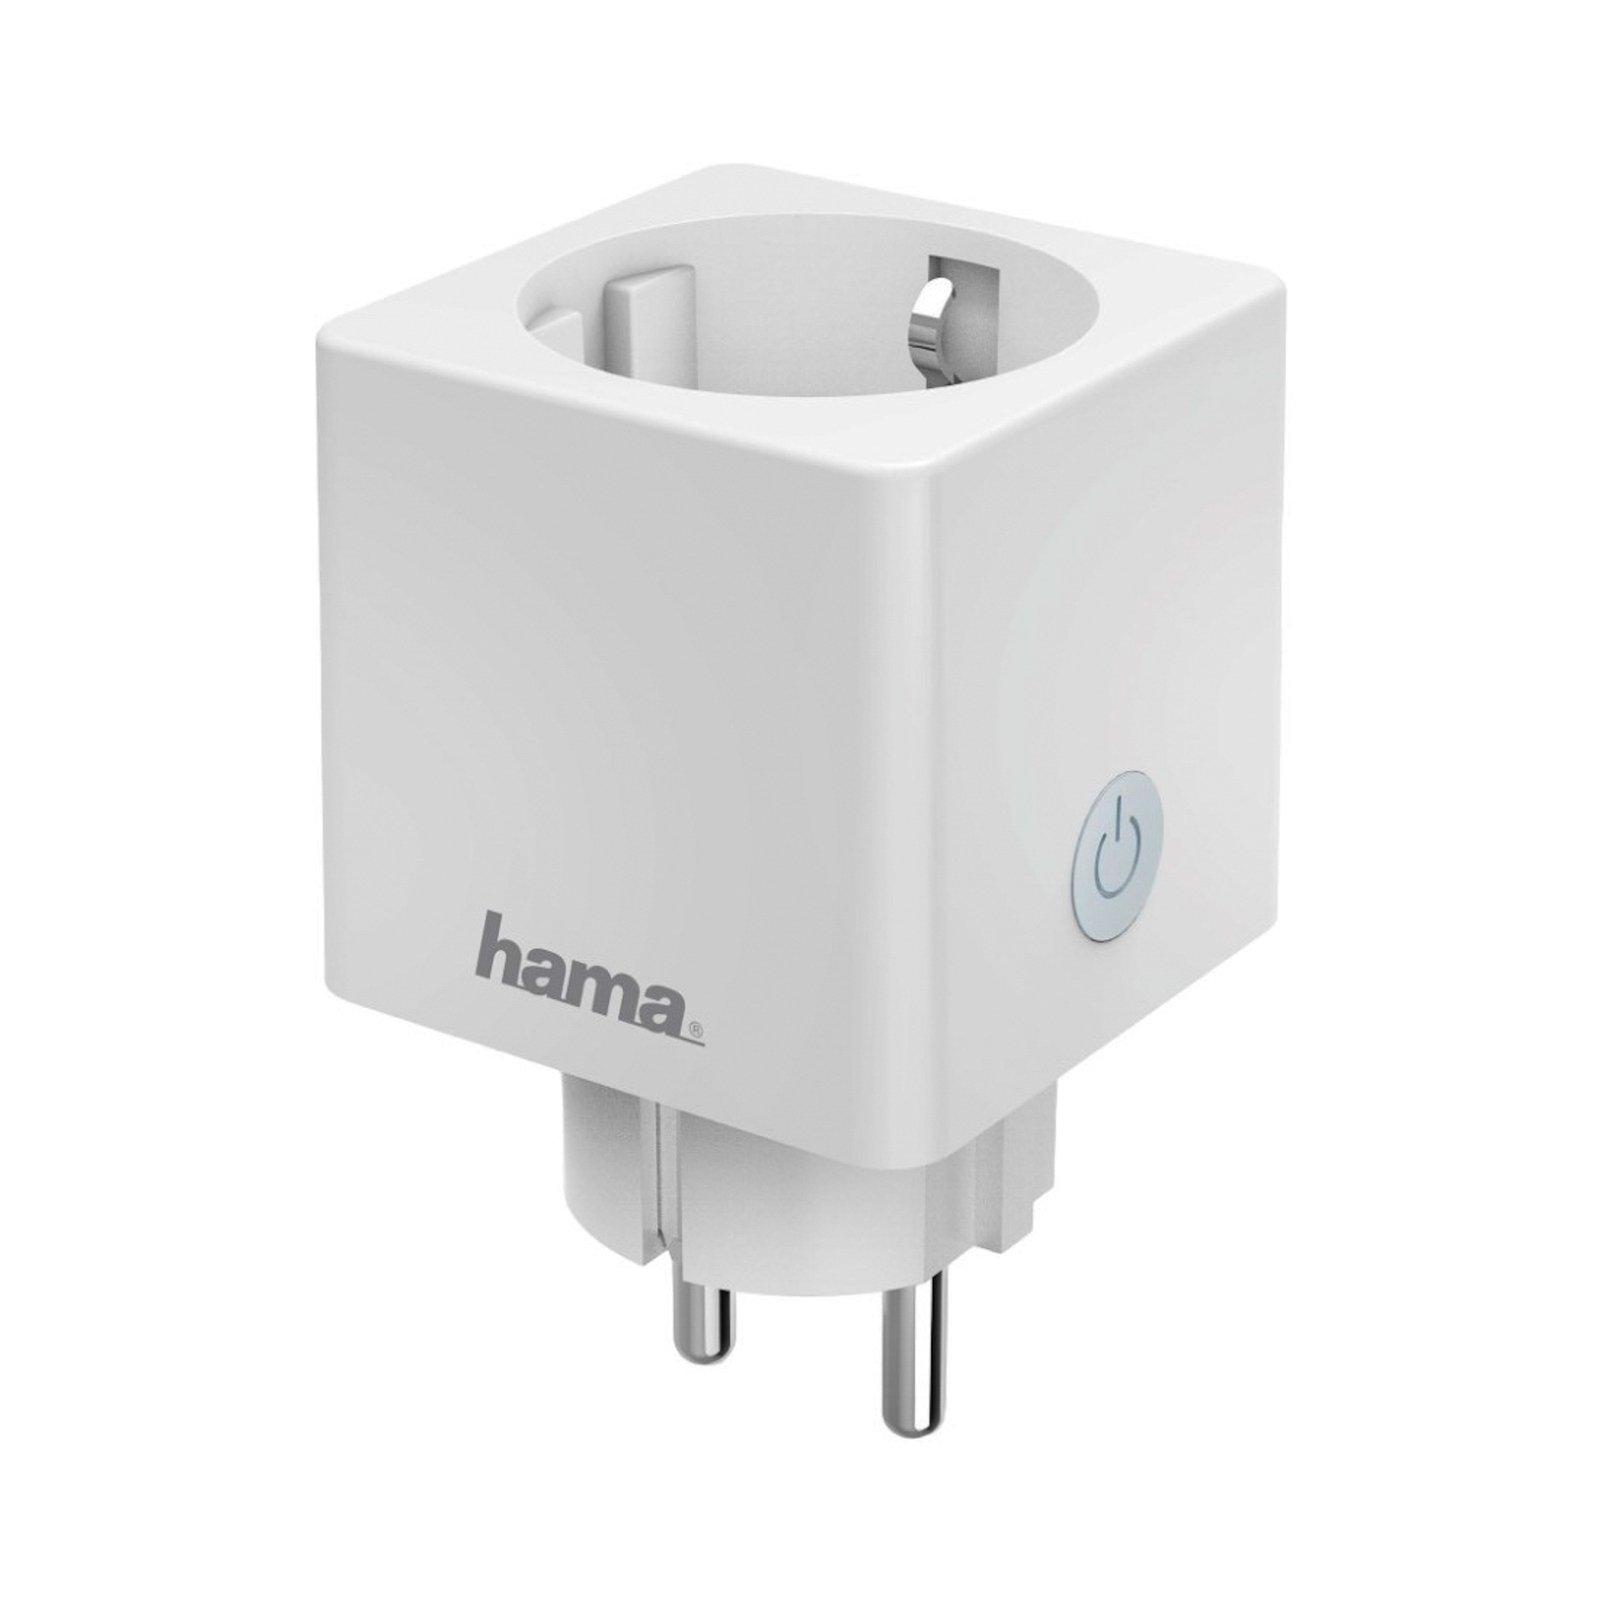 Kontrola aplikacije za mjerenje električne energije Hama Mini WiFi utičnica